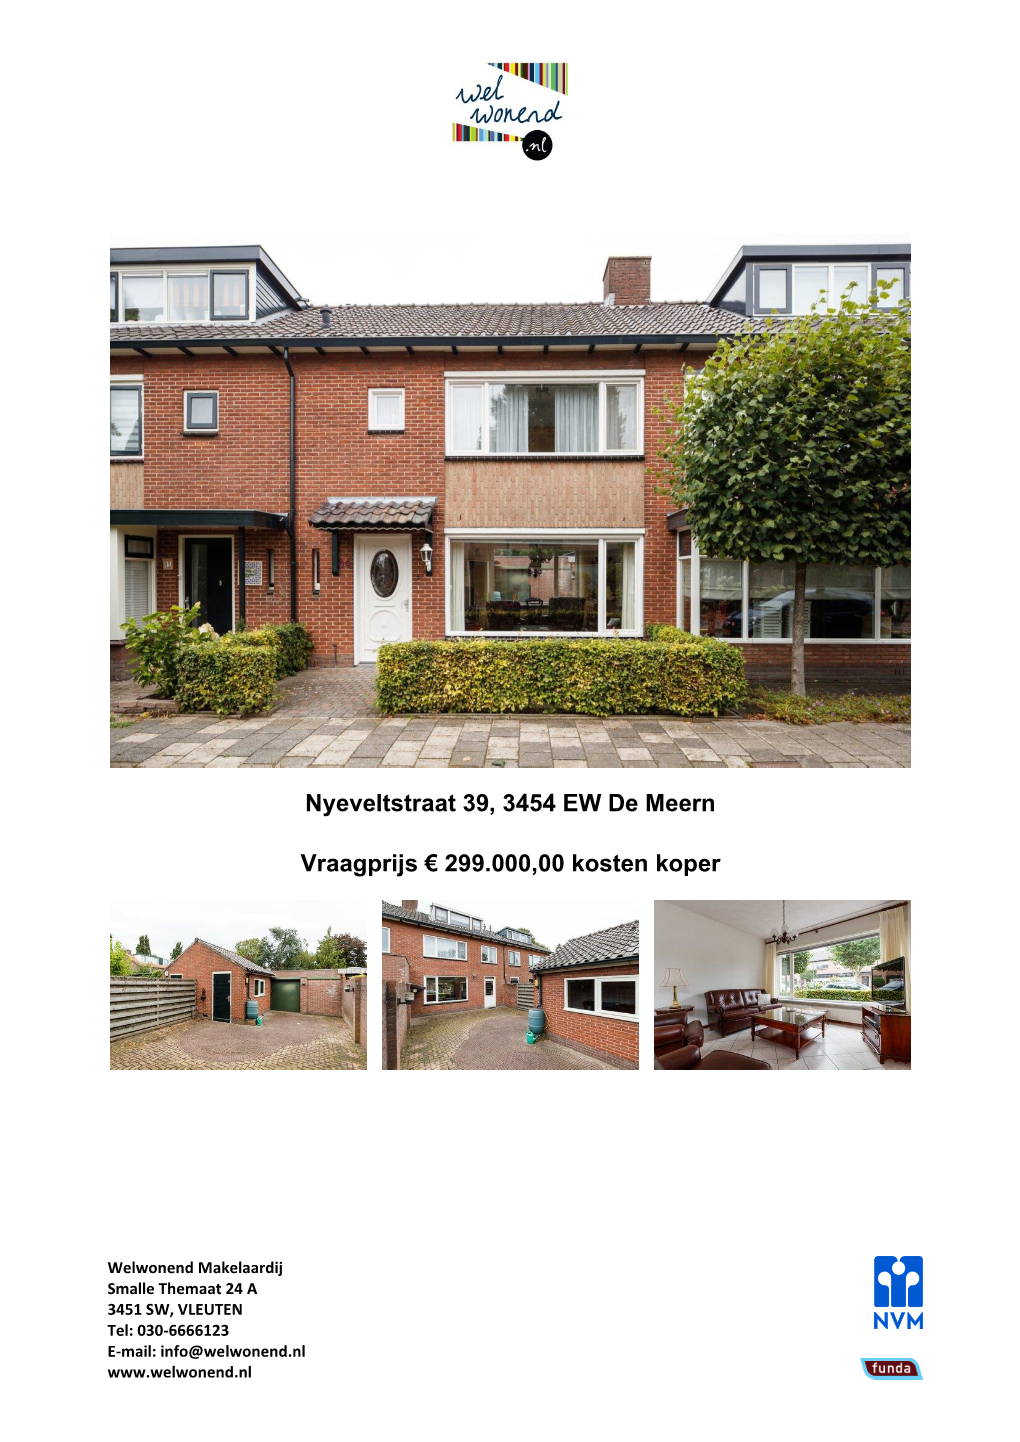 Nyeveltstraat 39, 3454 EW De Meern Vraagprijs € 299.000,00 Kosten Koper